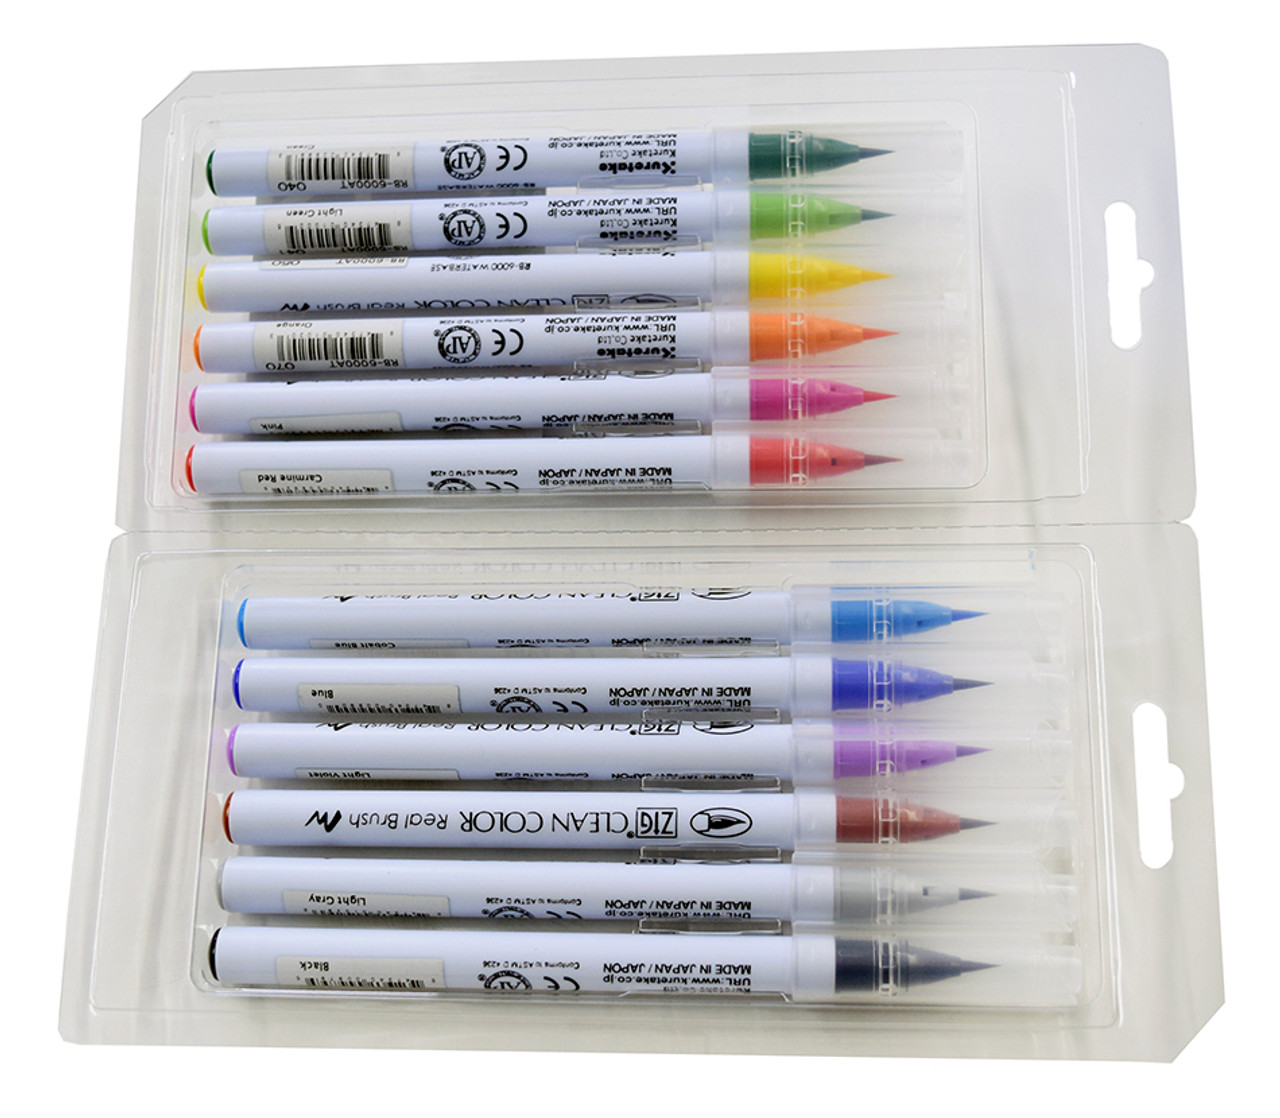 Kuretake Zig Clean Color Real Brush Marker Set, 12-Color Set